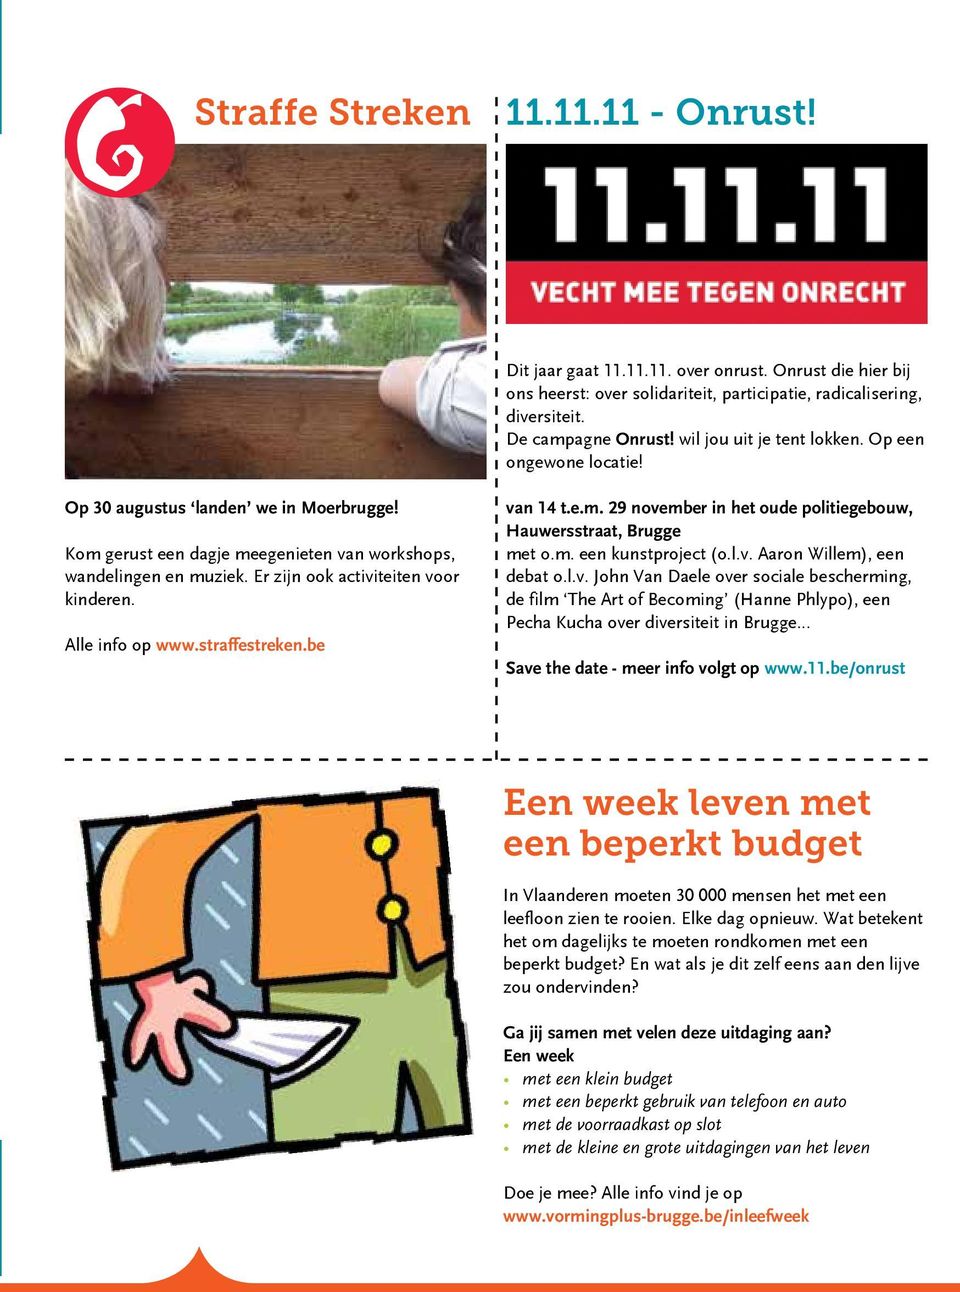 Er zijn ook activiteiten voor kinderen. Alle info op www.straffestreken.be van 14 t.e.m. 29 november in het oude politiegebouw, Hauwersstraat, Brugge met o.m. een kunstproject (o.l.v. Aaron Willem), een debat o.